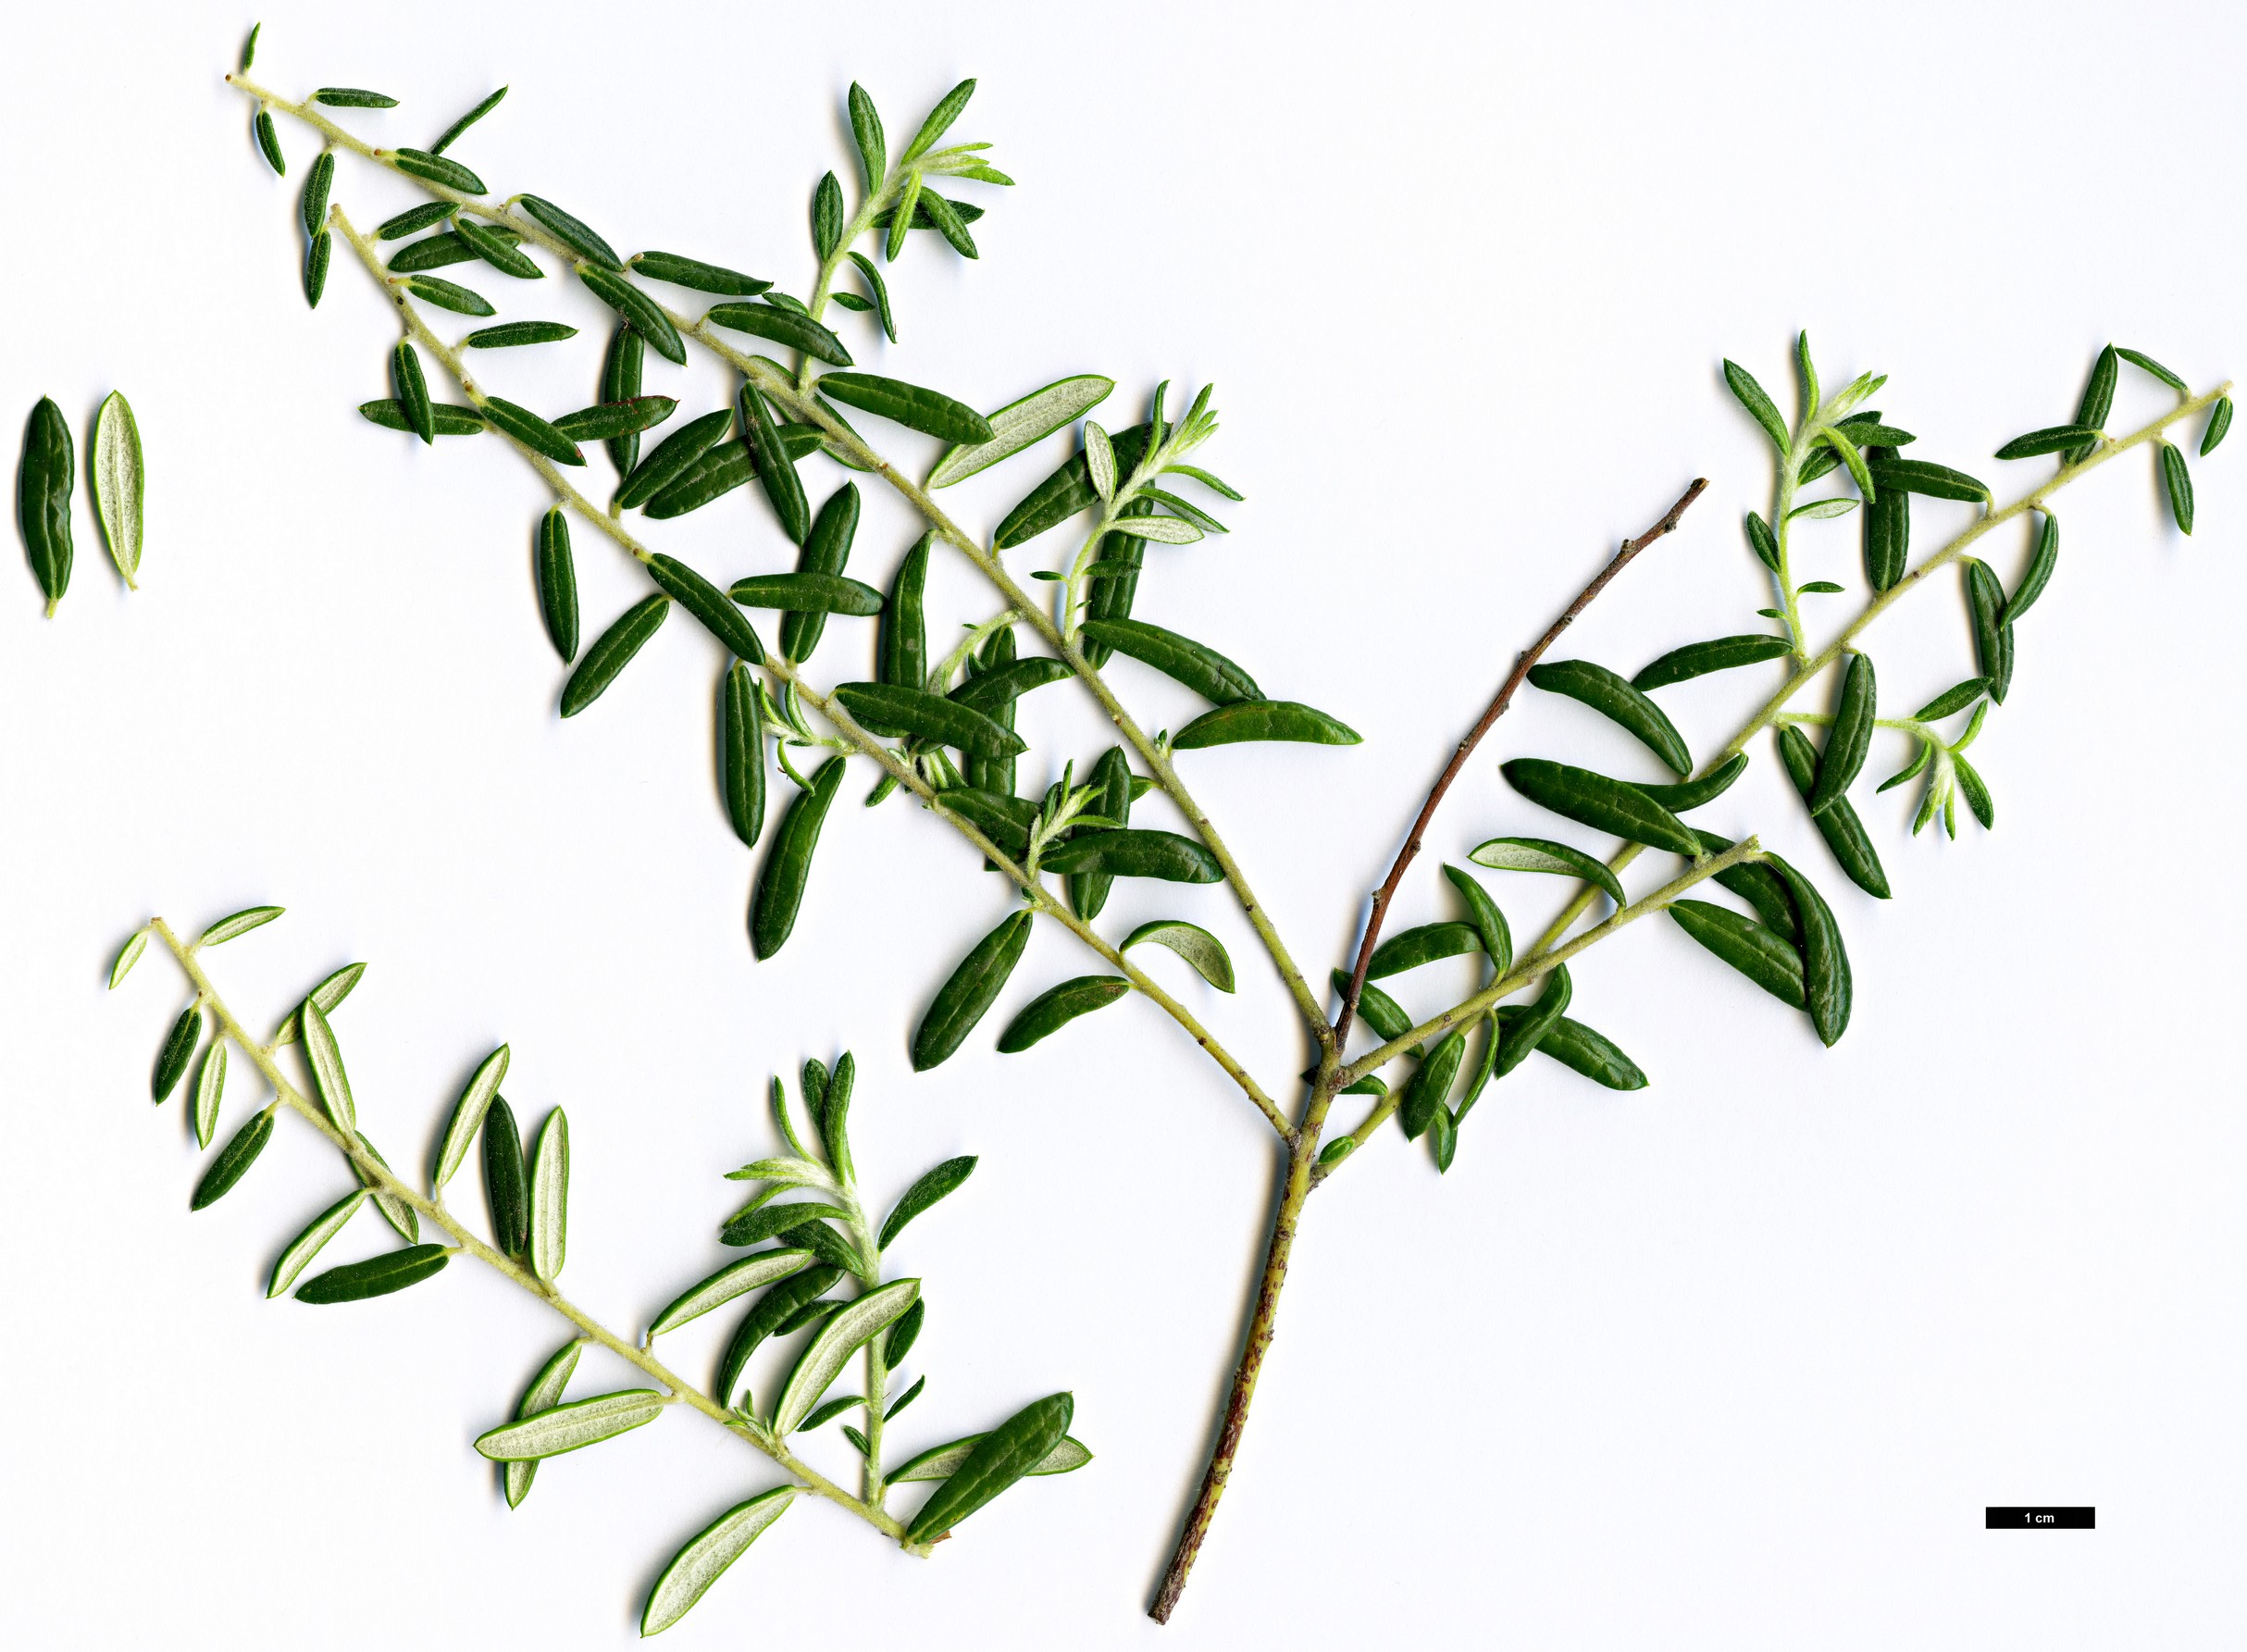 High resolution image: Family: Rhamnaceae - Genus: Phylica - Taxon: polifolia